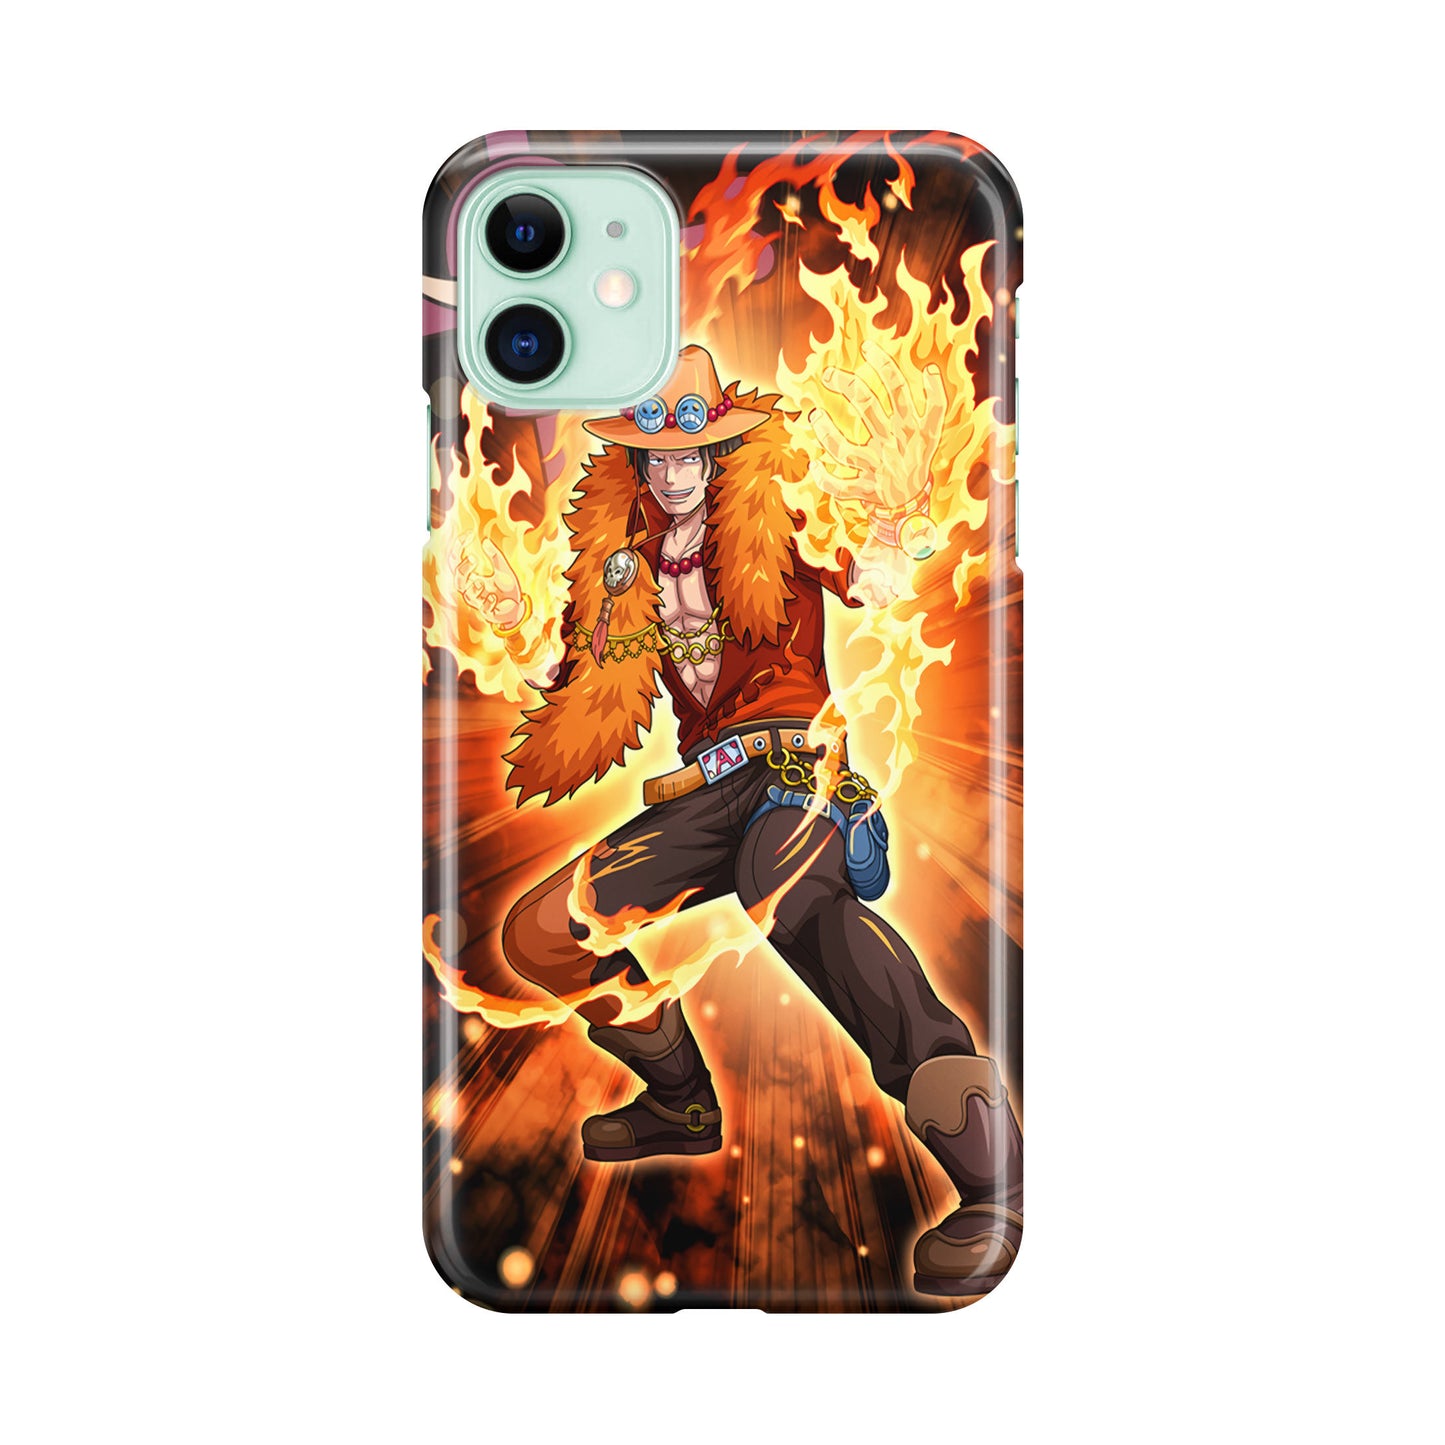 Portgas D Ace Fire Power iPhone 12 mini Case